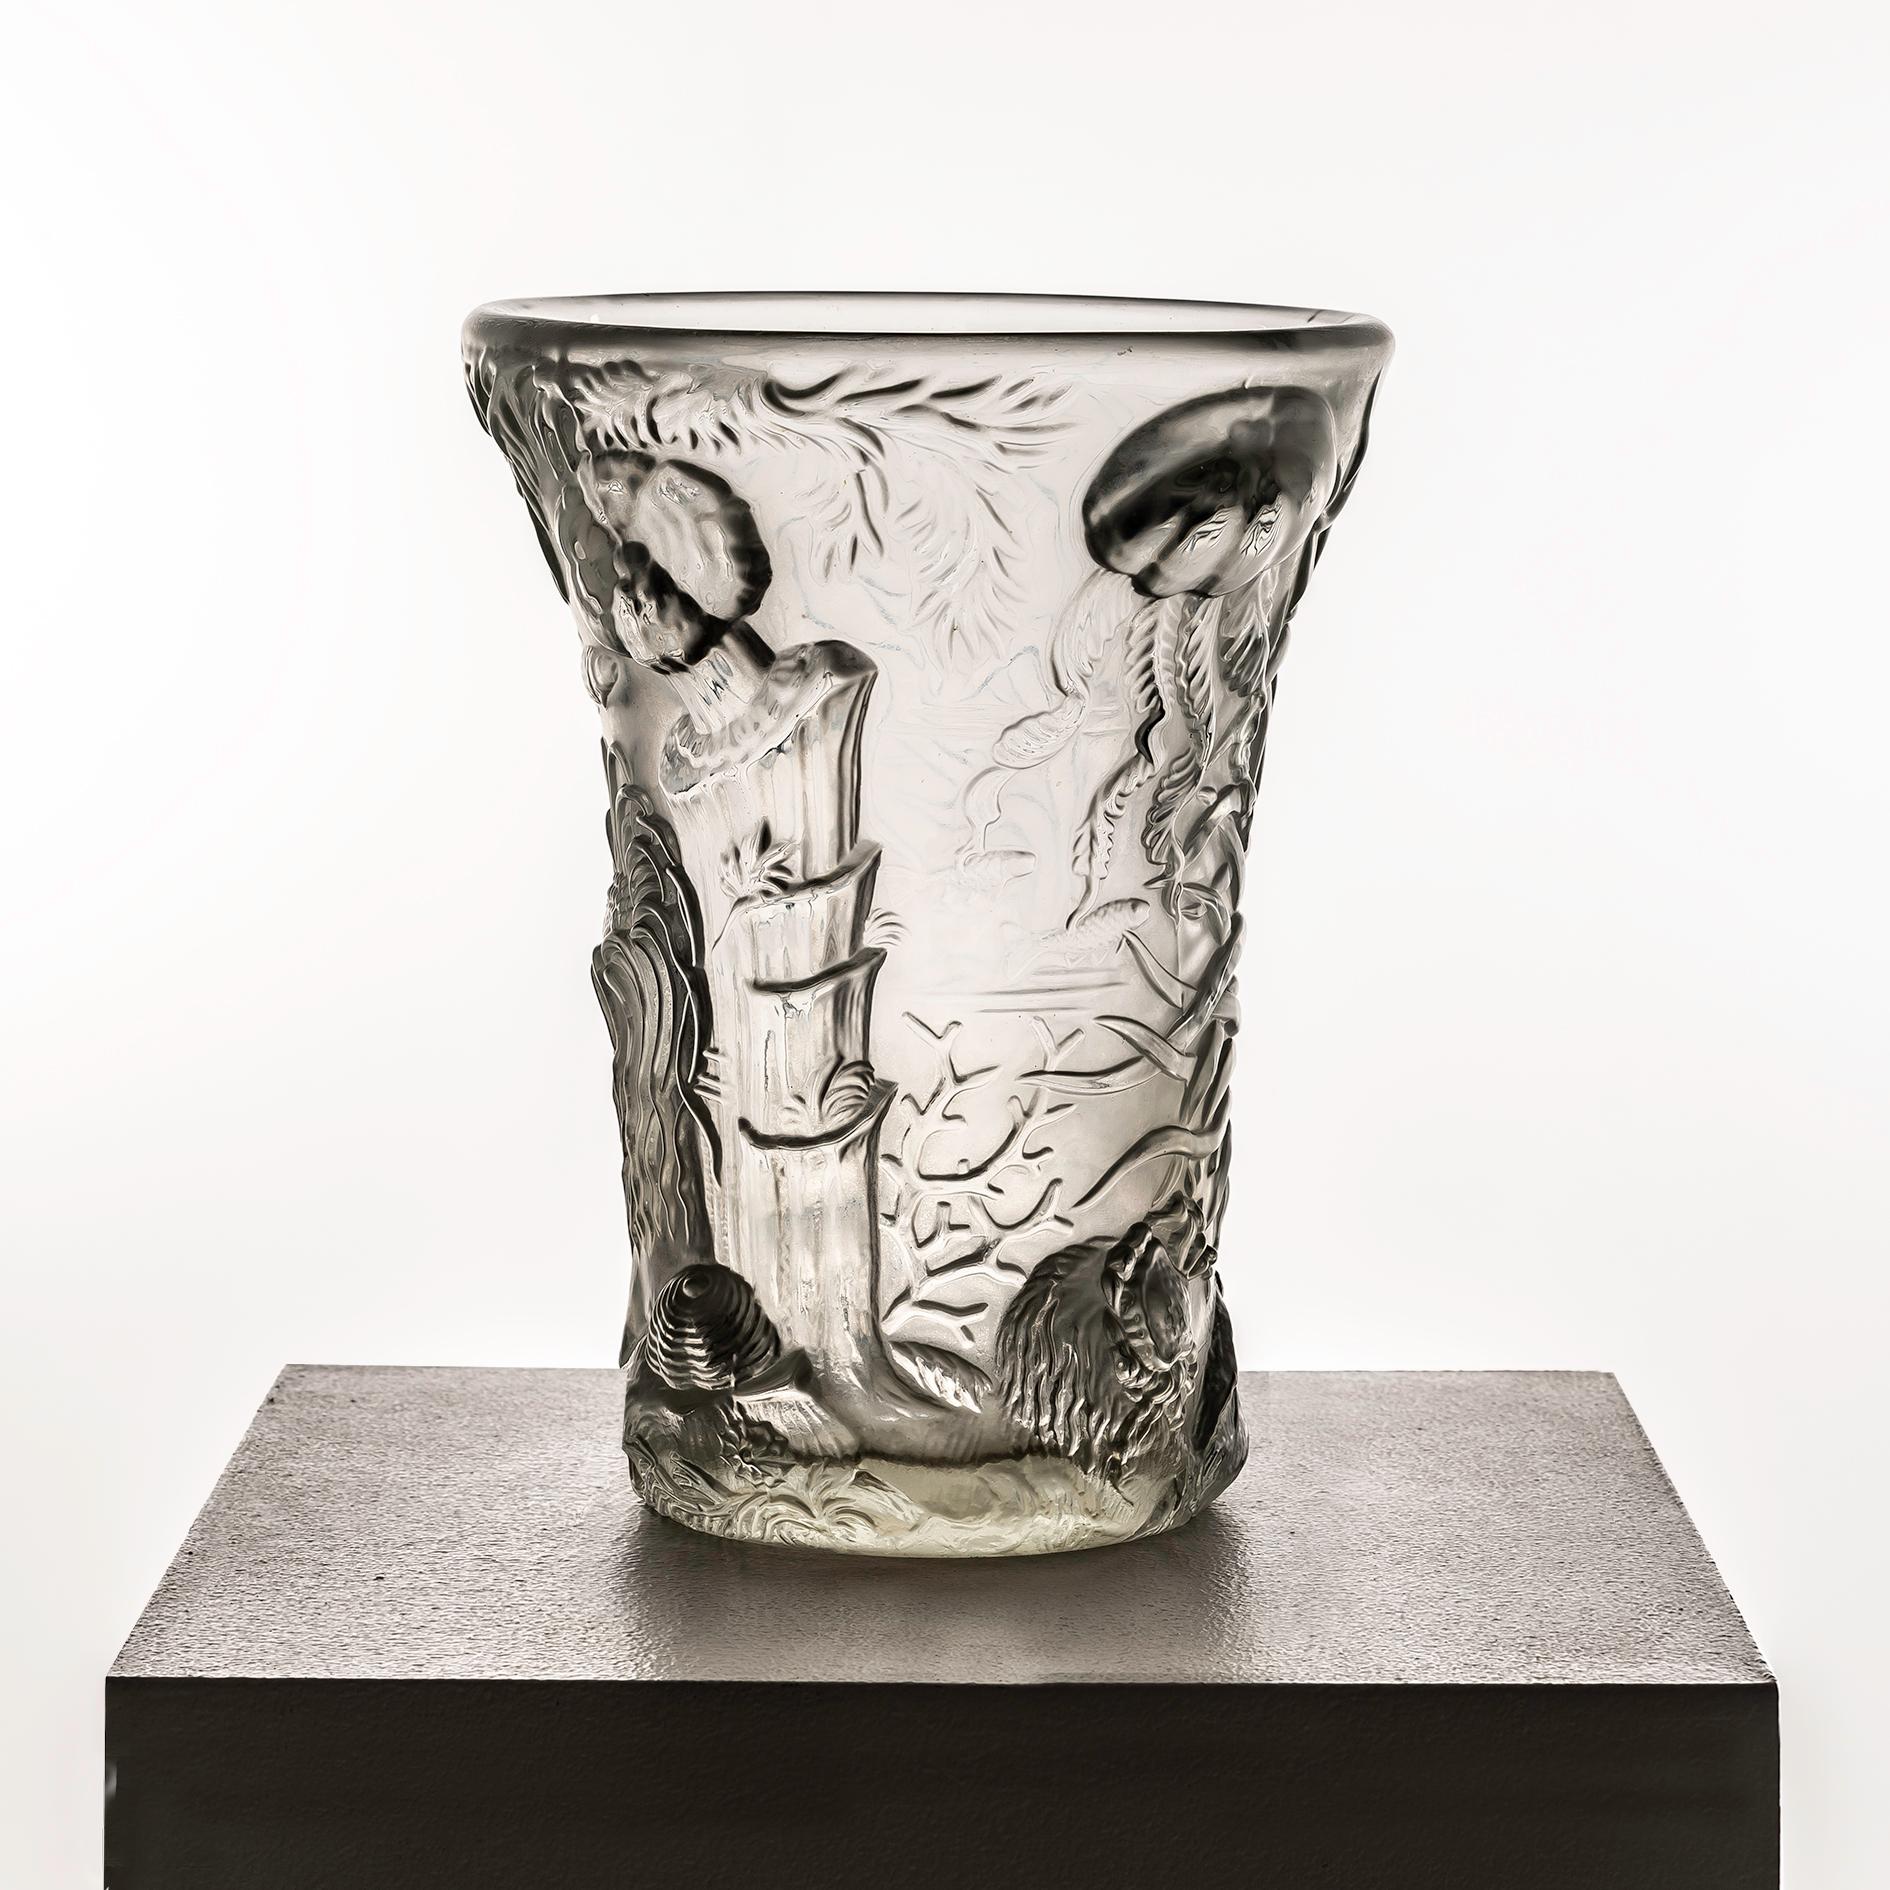 Le vase en verre Josef Inwald Marine Life Vase for Barolac, créé dans les années 1960, témoigne de l'excellence de l'artisanat et de l'innovation artistique qui ont défini la verrerie du milieu du siècle. Cette pièce particulière est révérée pour